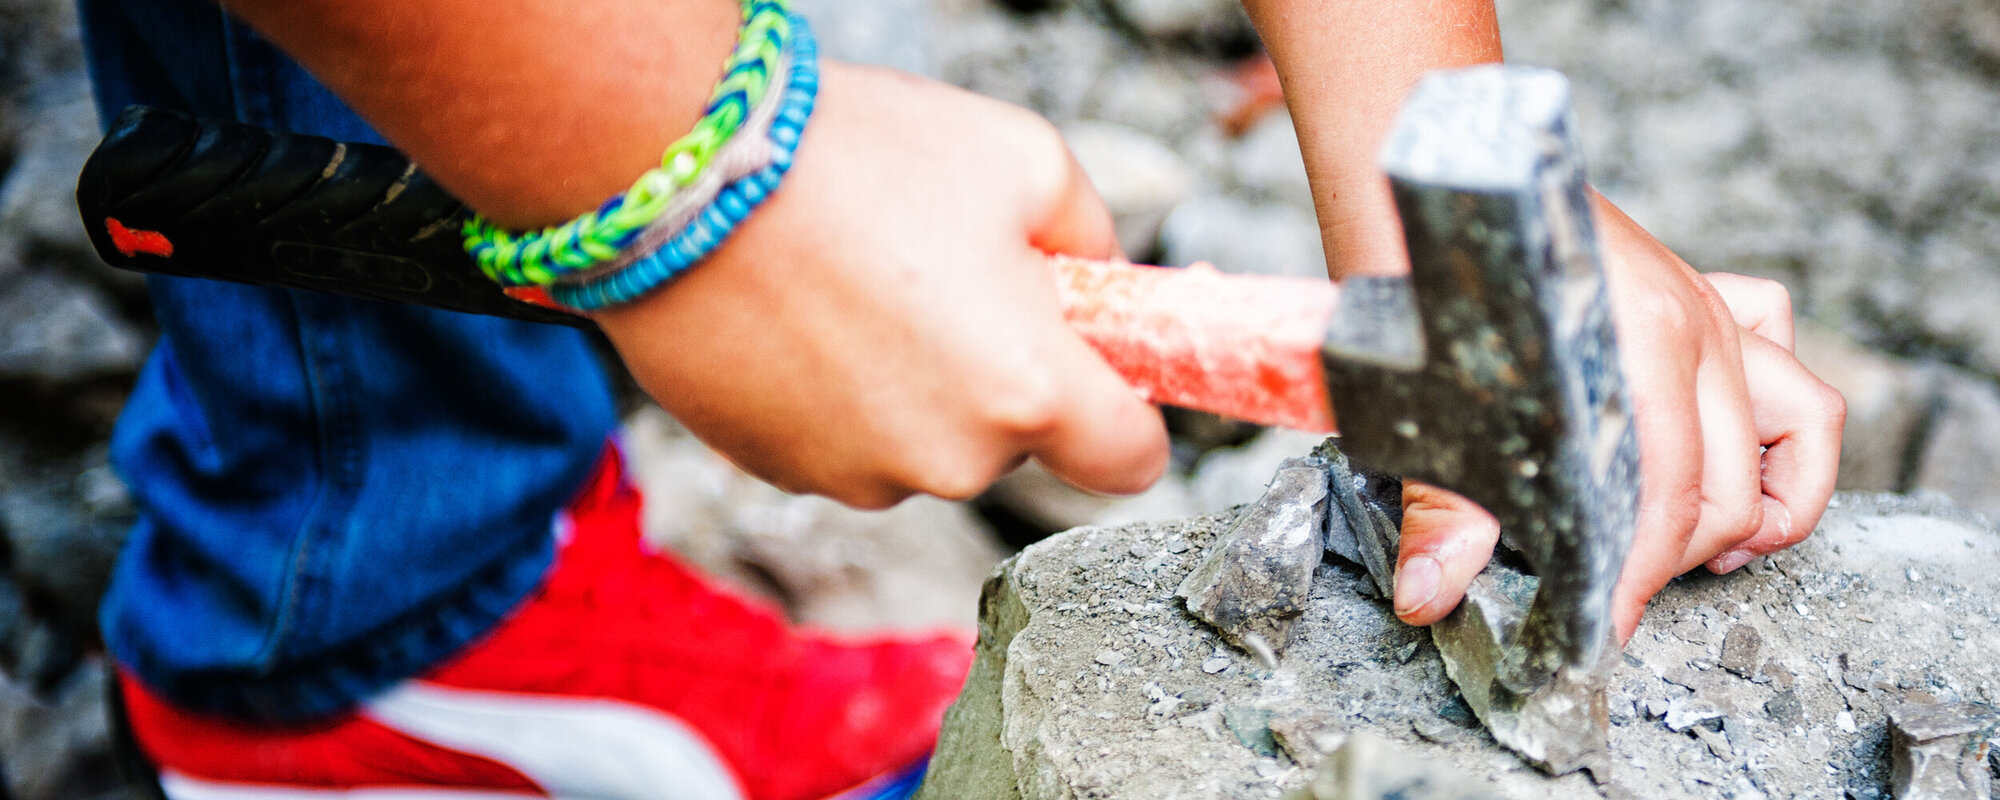 Zwei Kinderhände mit einem Hammer in der Hand, mit dem auf einen Stein geklopft wird.